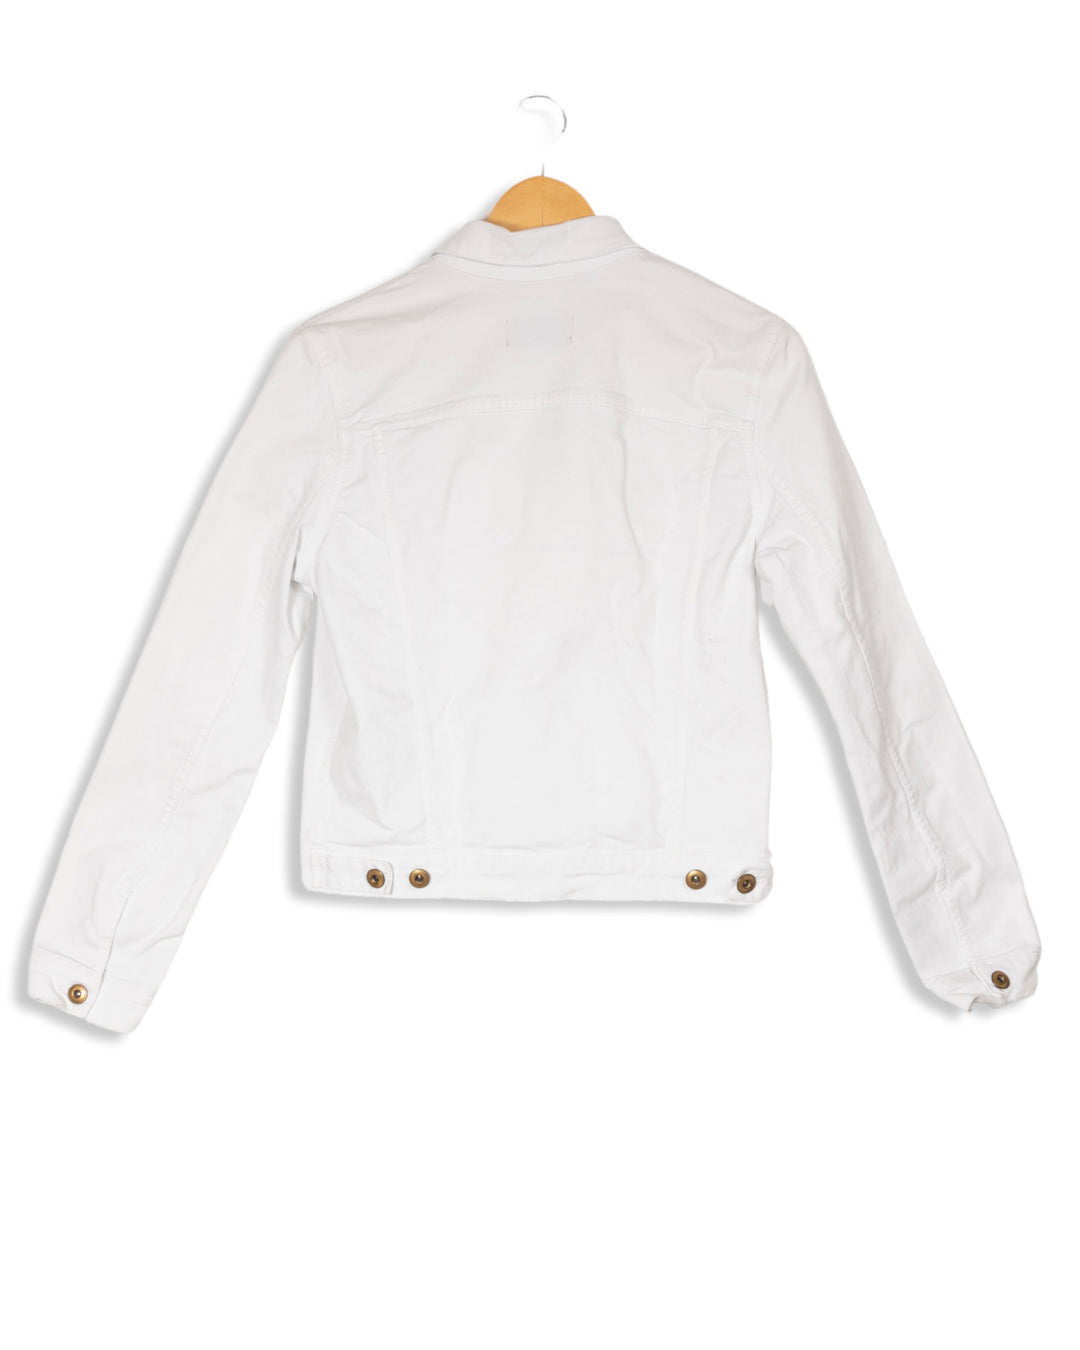 White denim jacket - S